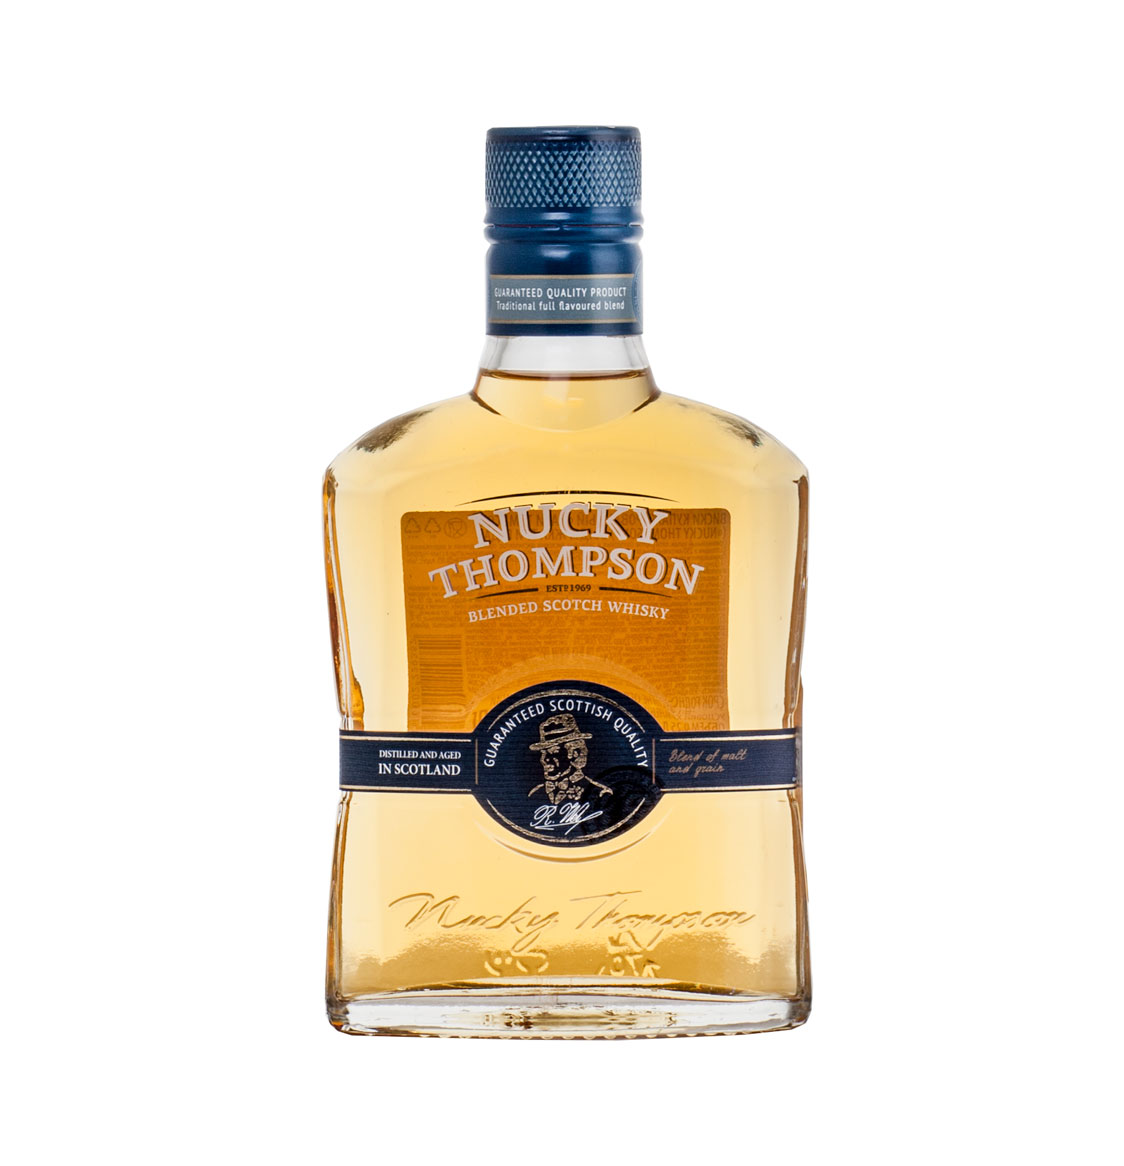 Nucky thompson 0.7 цена. Виски Наки Томпсон 0.25. Виски Наки Томпсон купажированный 3года 0,5л 40%. Виски Наки Томпсон 0,5л 40% 3 года. Виски Наки Томпсон 3 года 0.5.